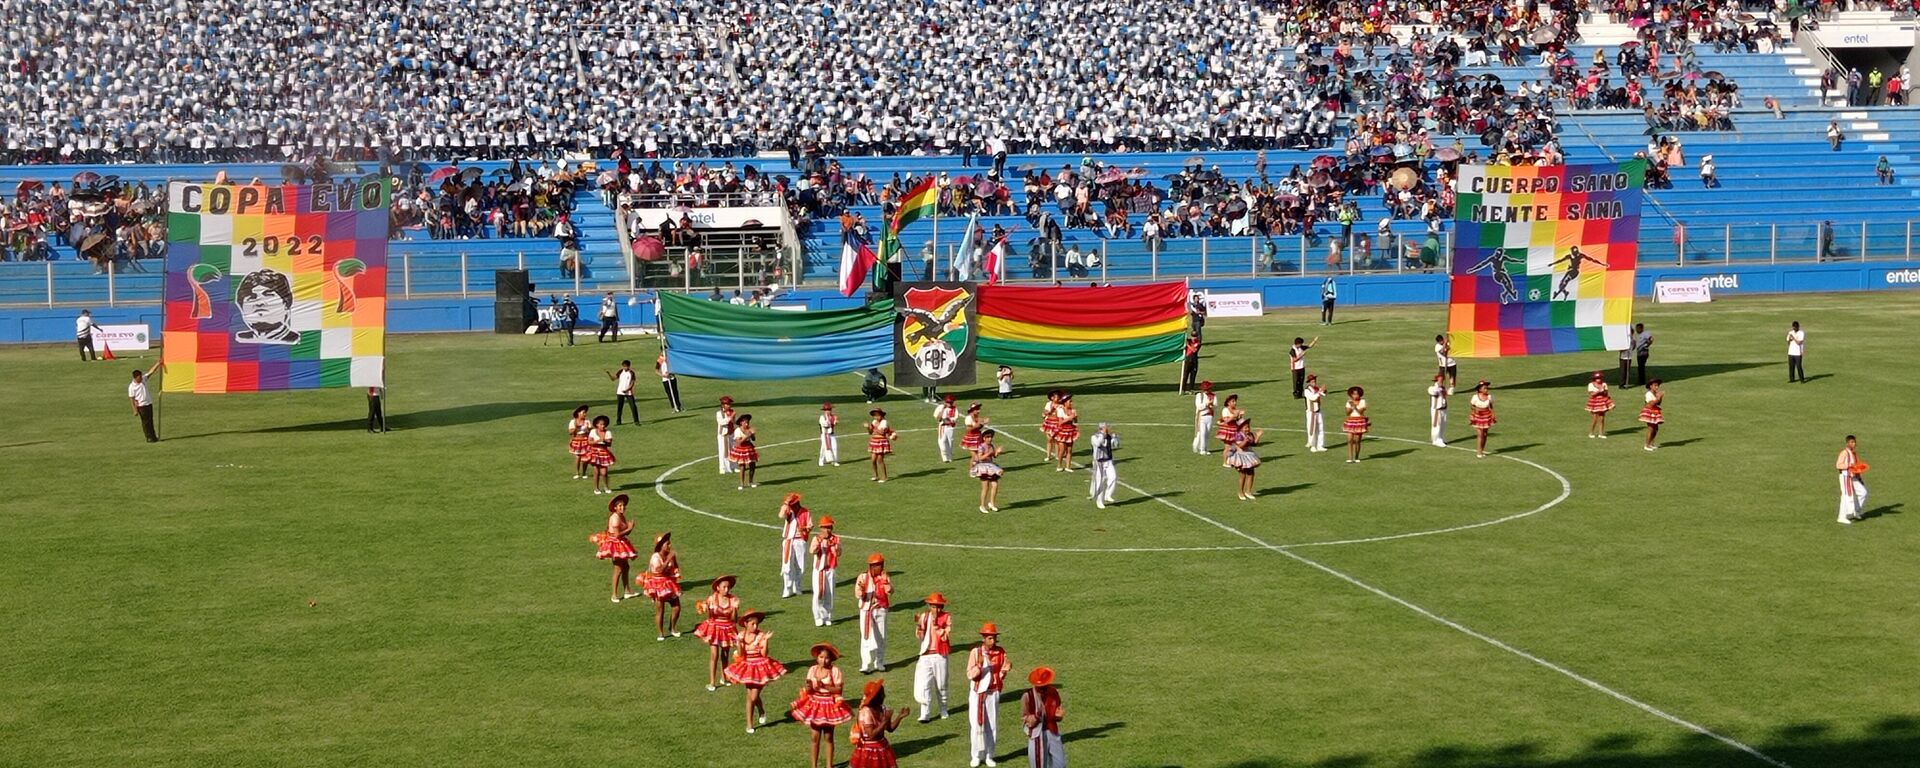 La Copa Evo en Bolivia - Sputnik Mundo, 1920, 01.08.2022